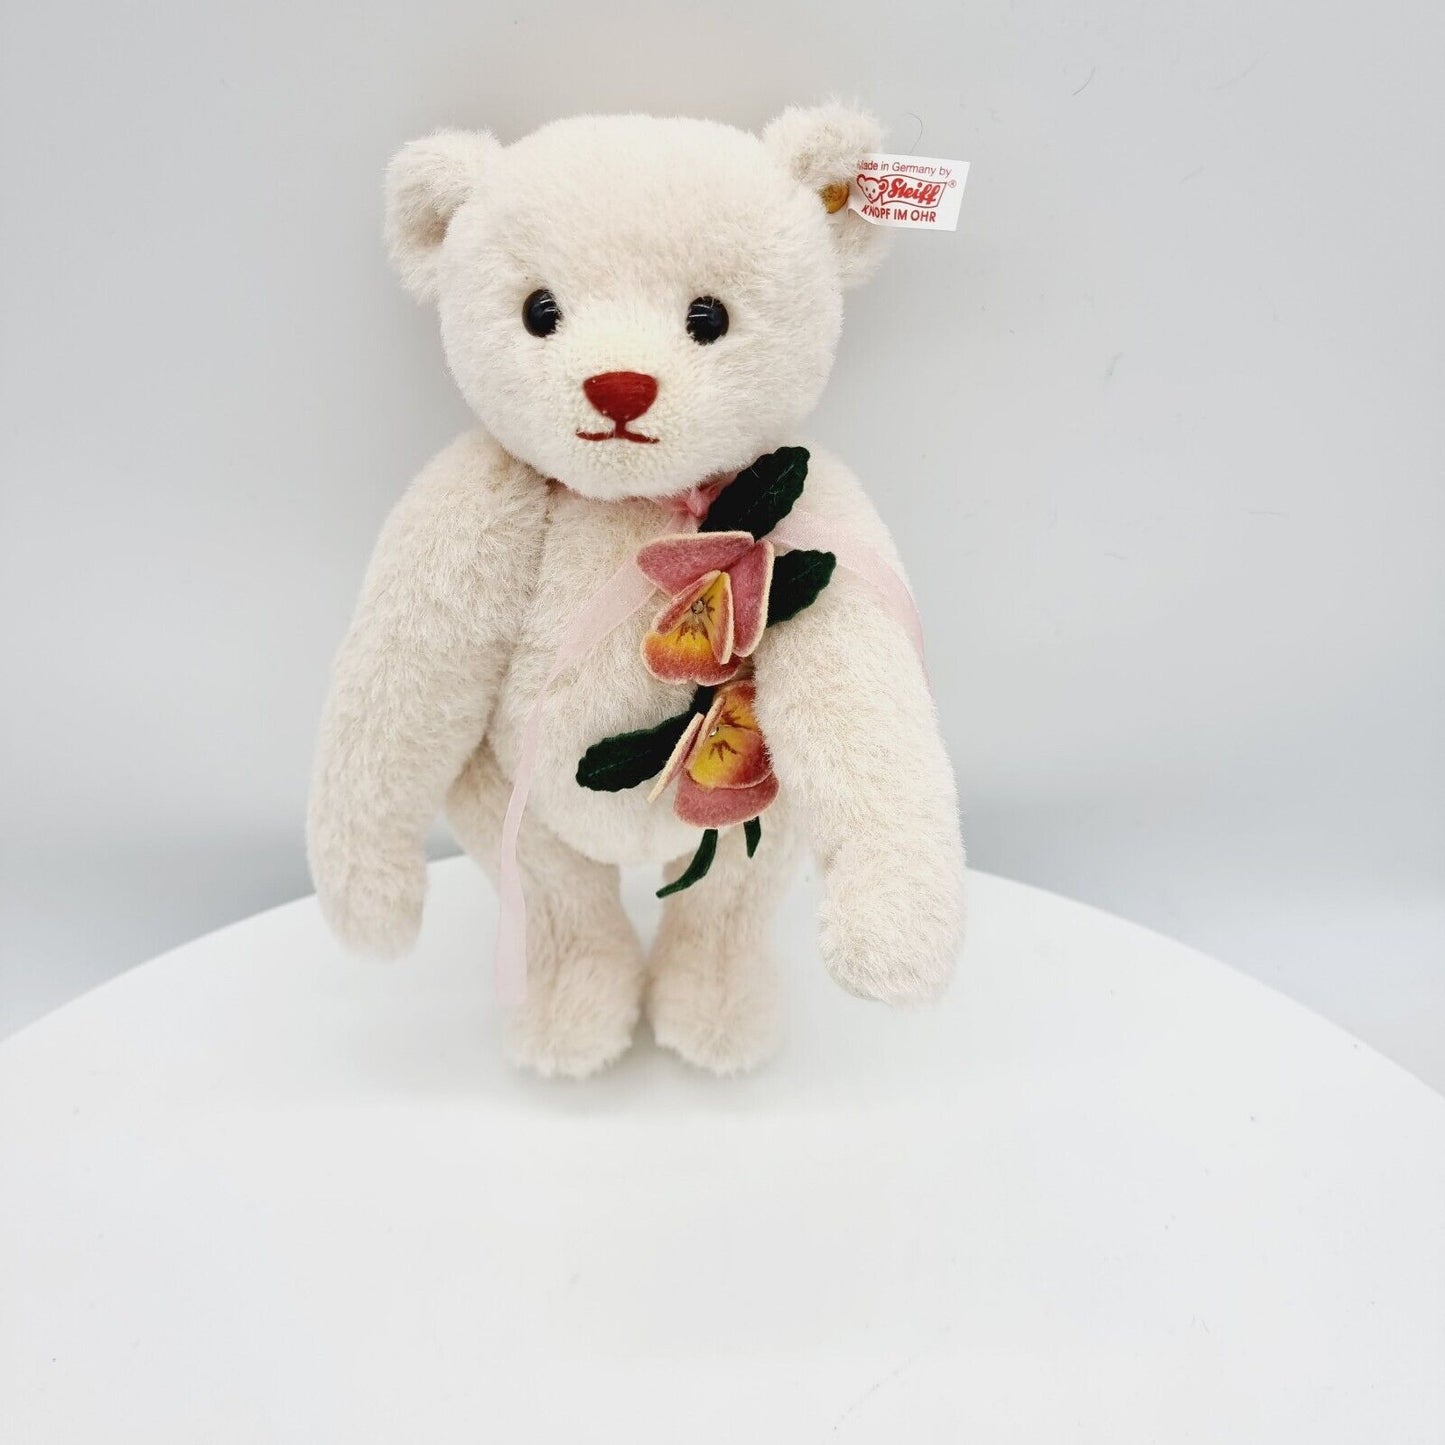 Steiff 682773 Teddybär Pansy the Springtime Teddy Bear limitiert 1500 aus 2014